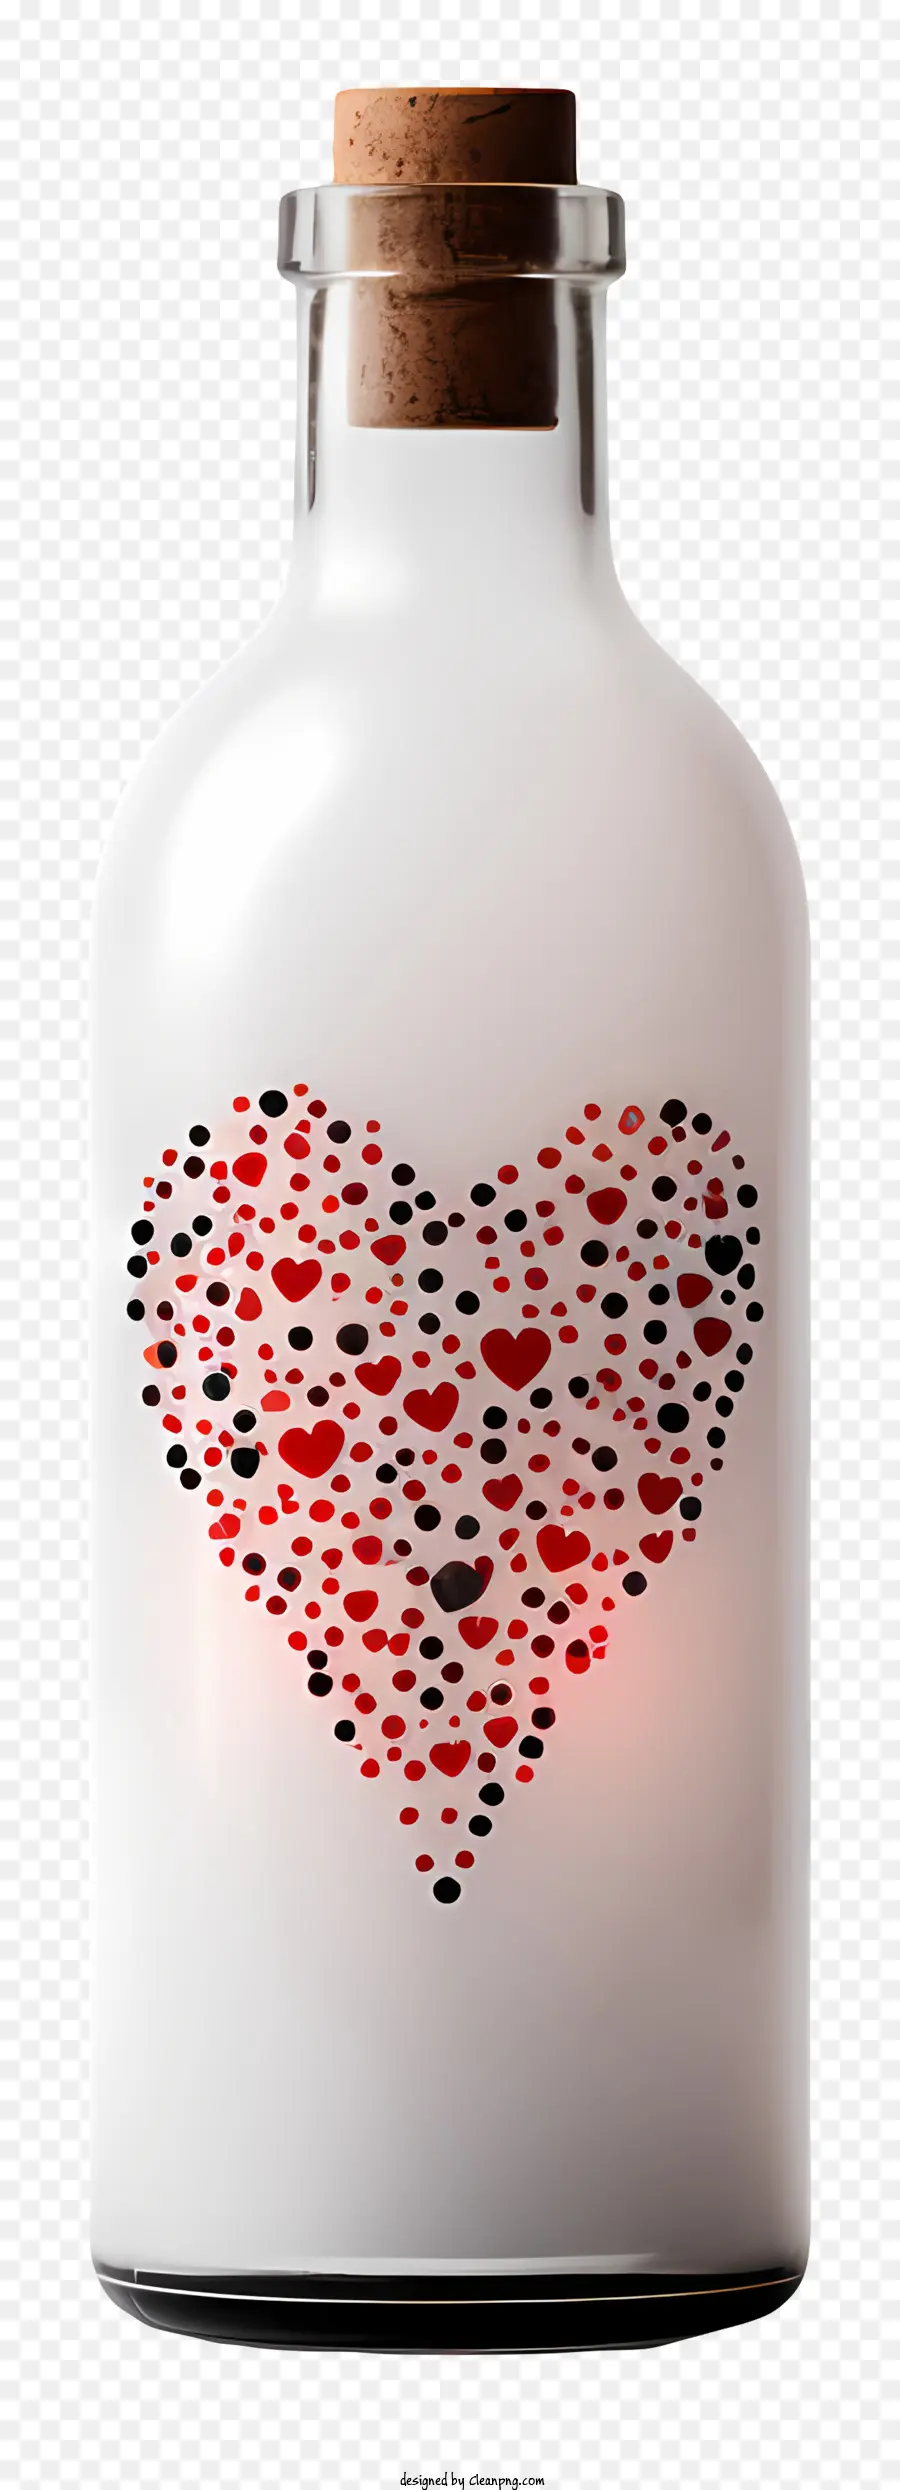 Motivo Cuore - Design del cuore su bottiglia con top sughero